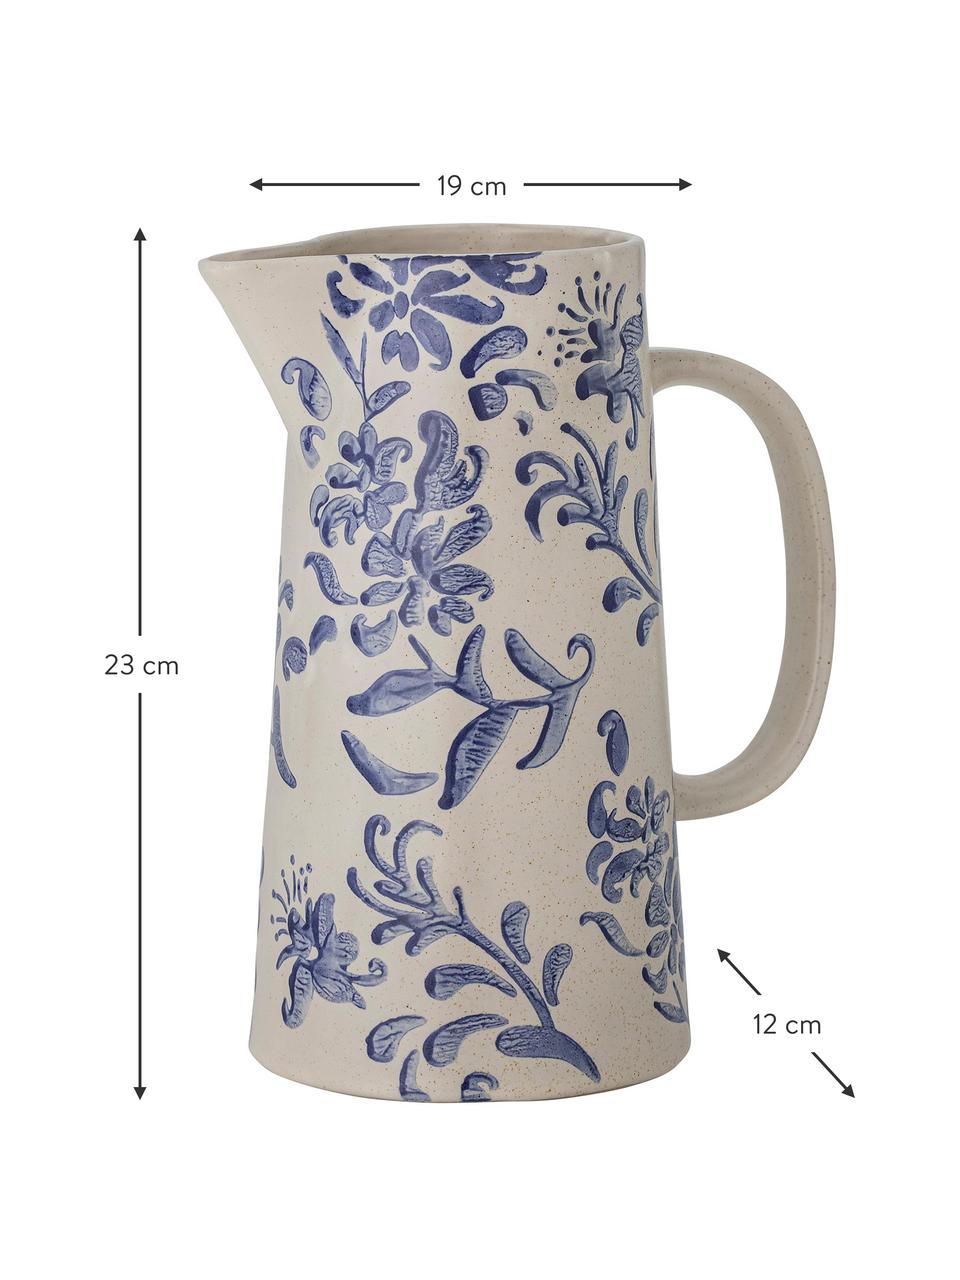 Ręcznie malowany dzbanek Petunia, 1,7 l, Kamionka, Beżowy, odcienie niebieskiego, S 19 x W 23 cm, 1.7 l